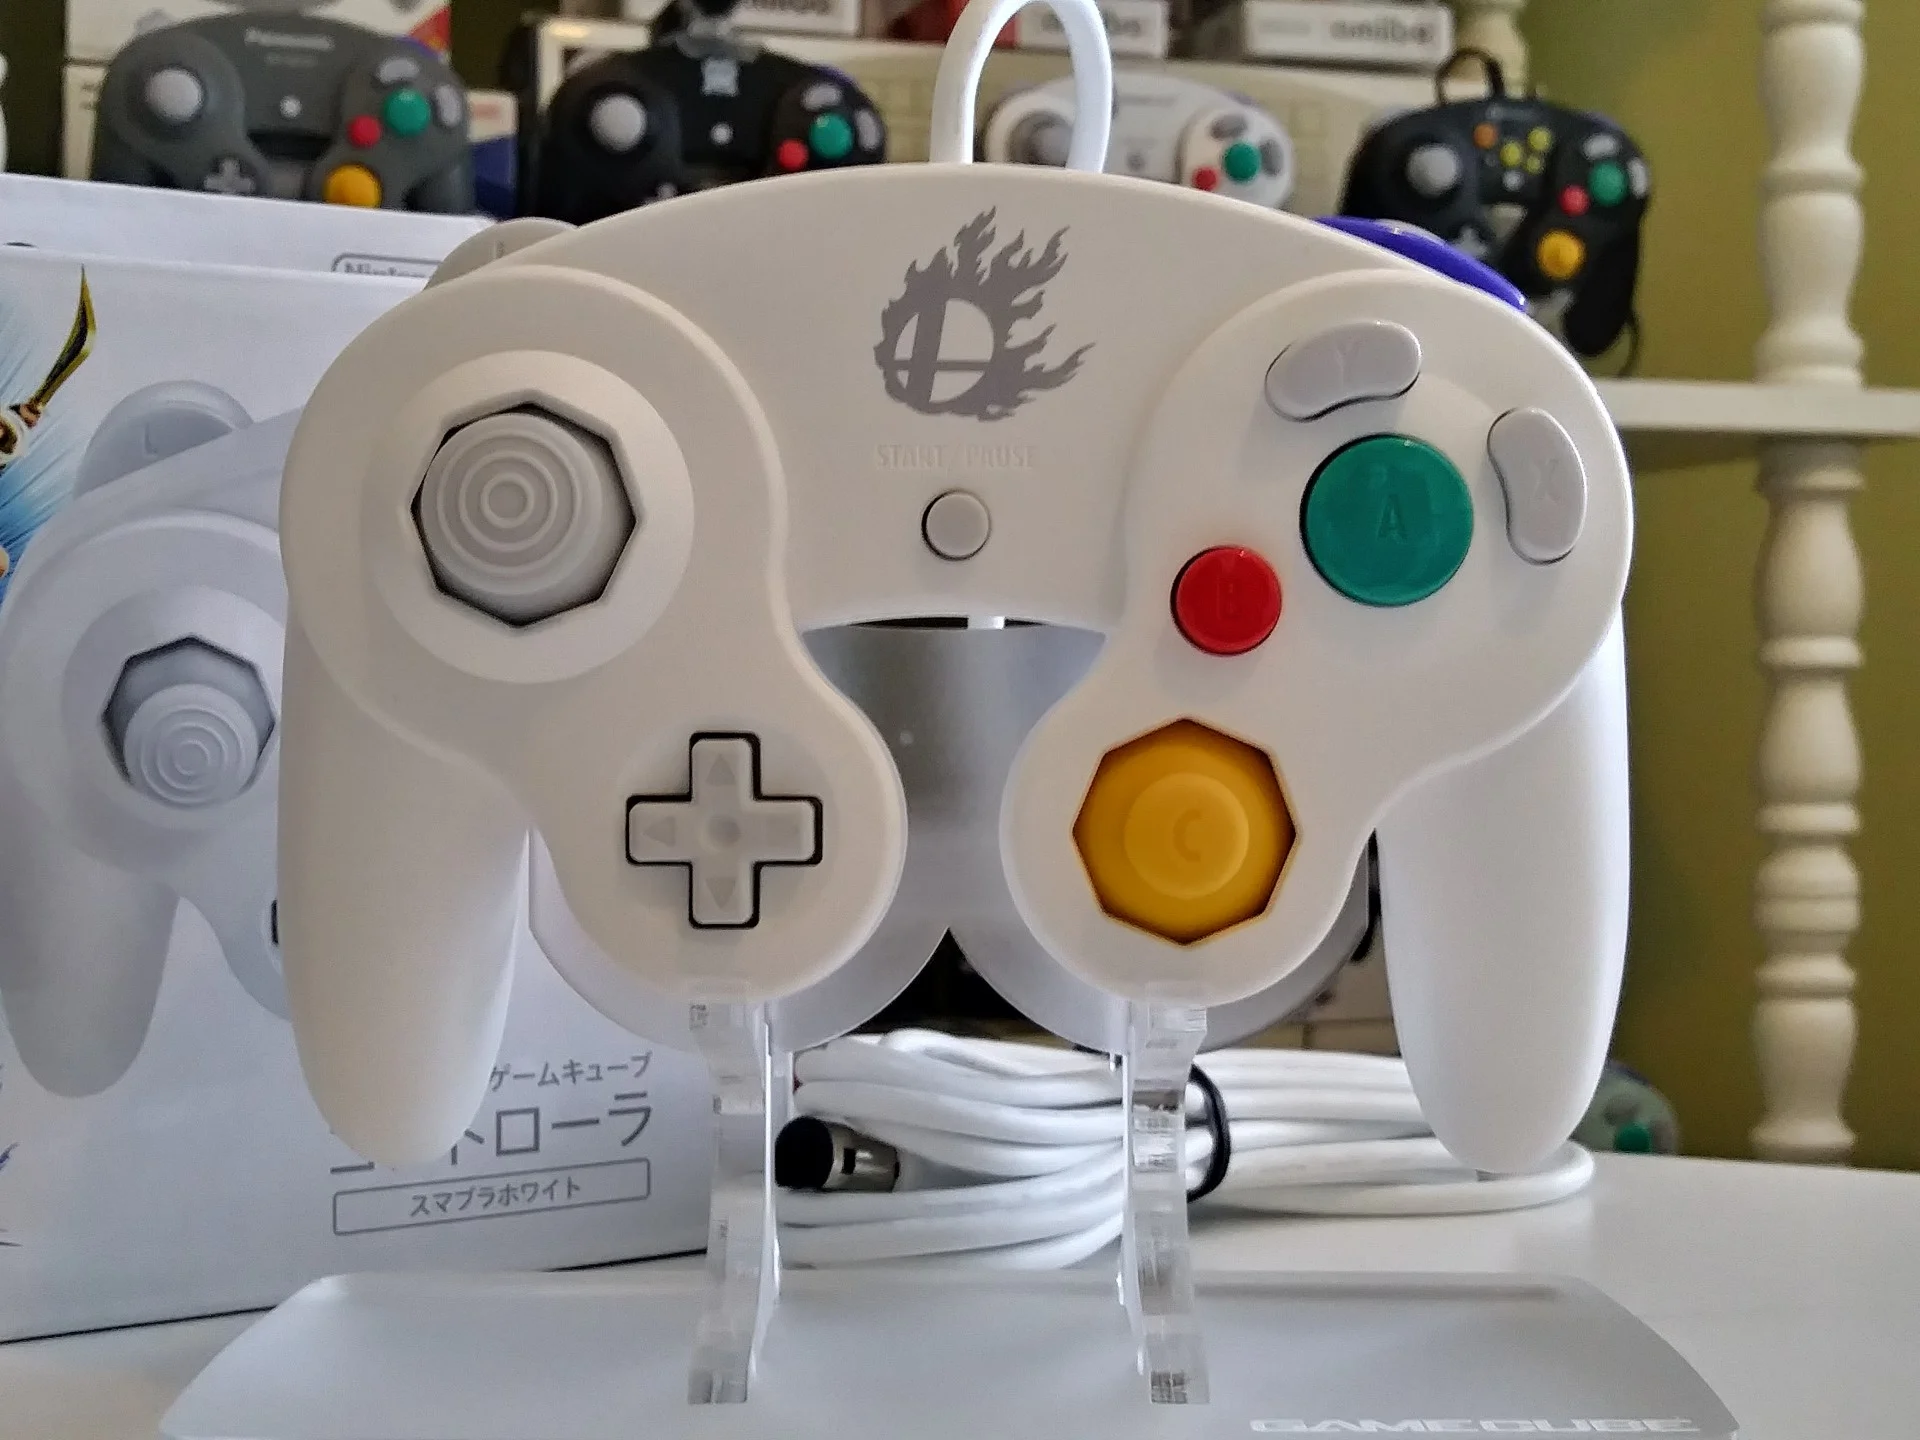  Nintendo GameCube Super Smash Bros. White Controller [EU]